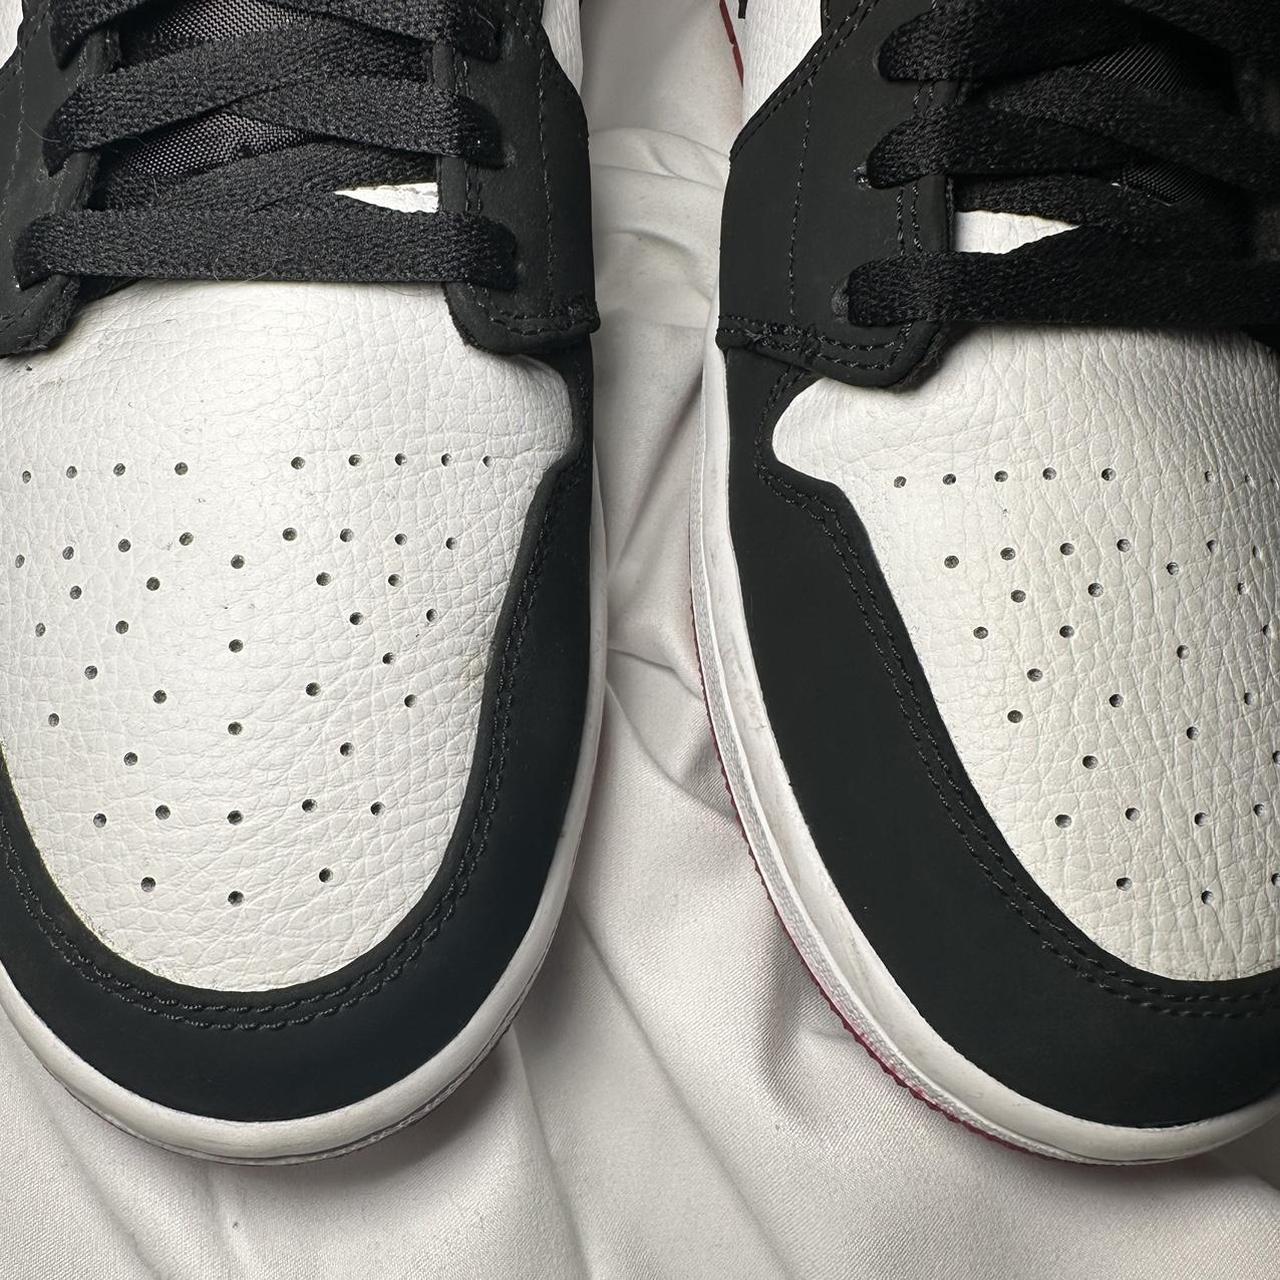 Jordan 1 Low Black Toe 2019. Size 11.5. Sold as is.... - Depop